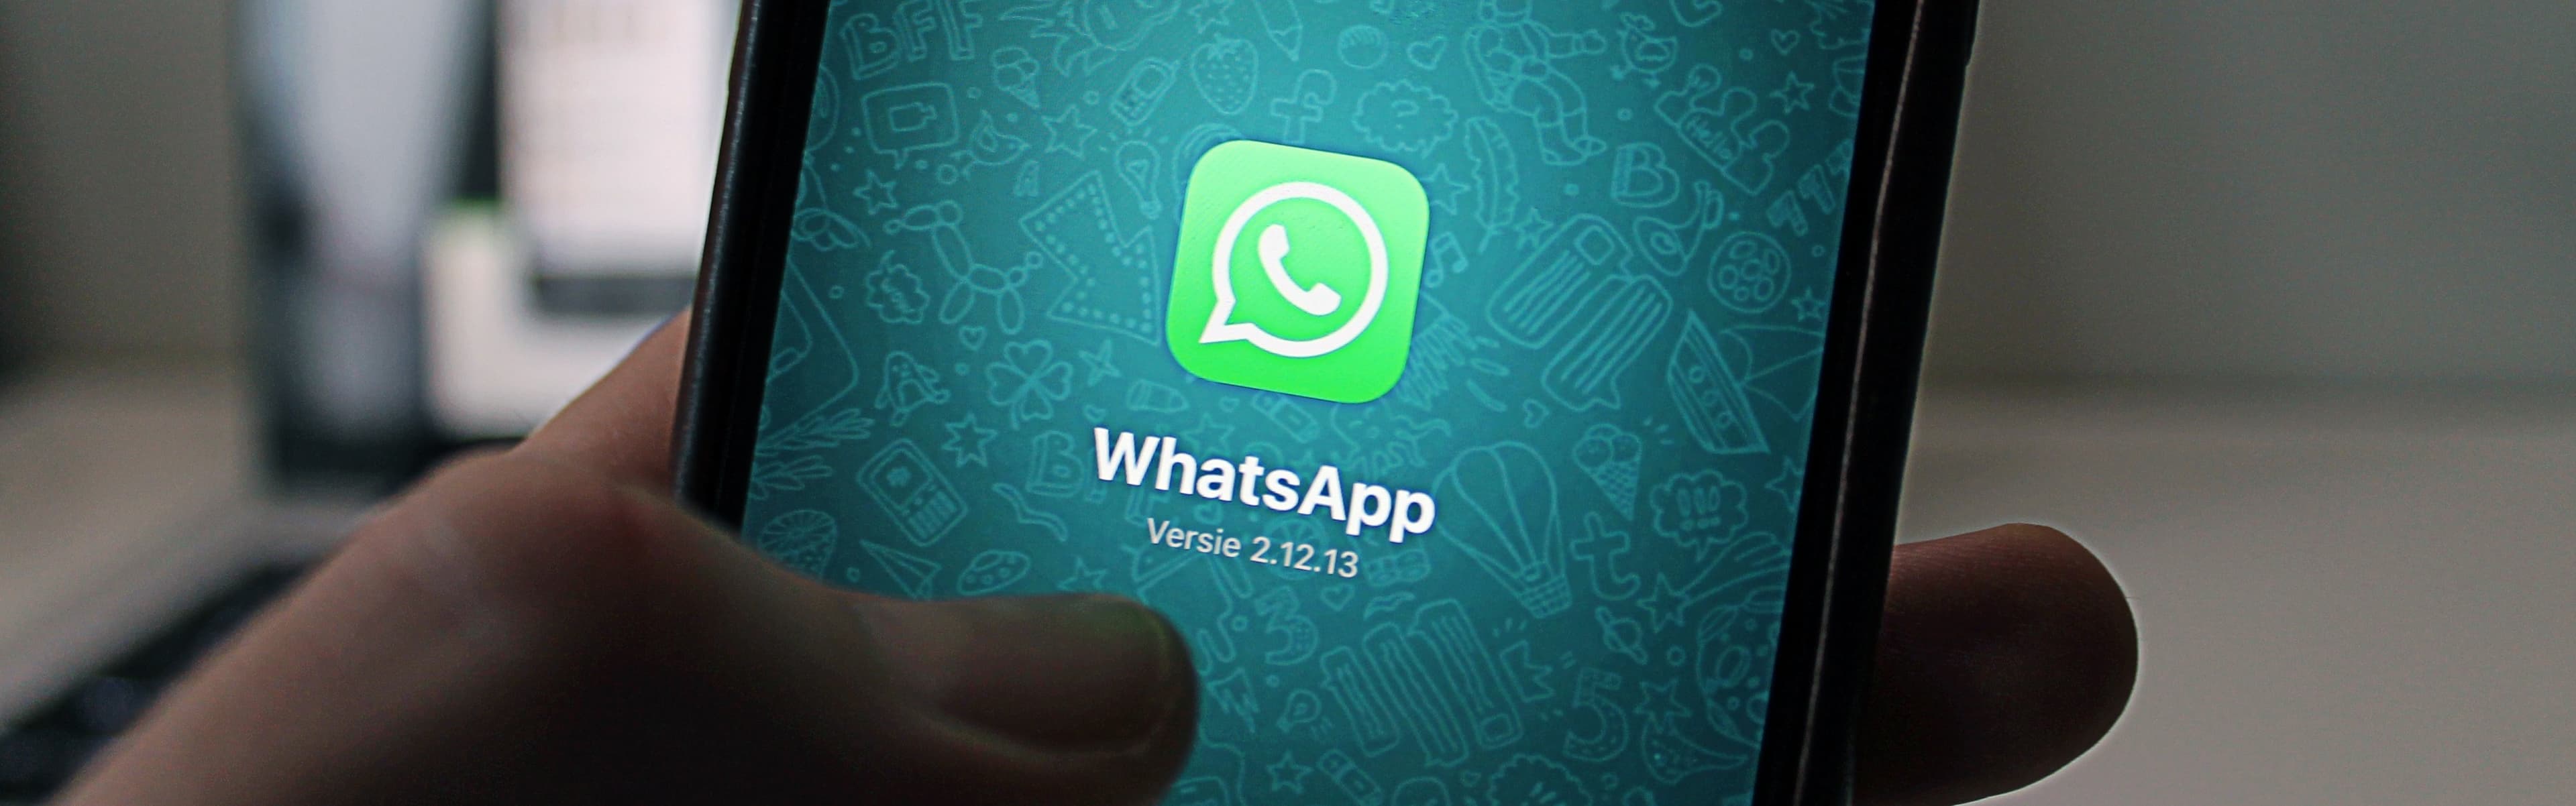 WhatsApp maakt overzetten chatgesprekken naar iPhone mogelijk